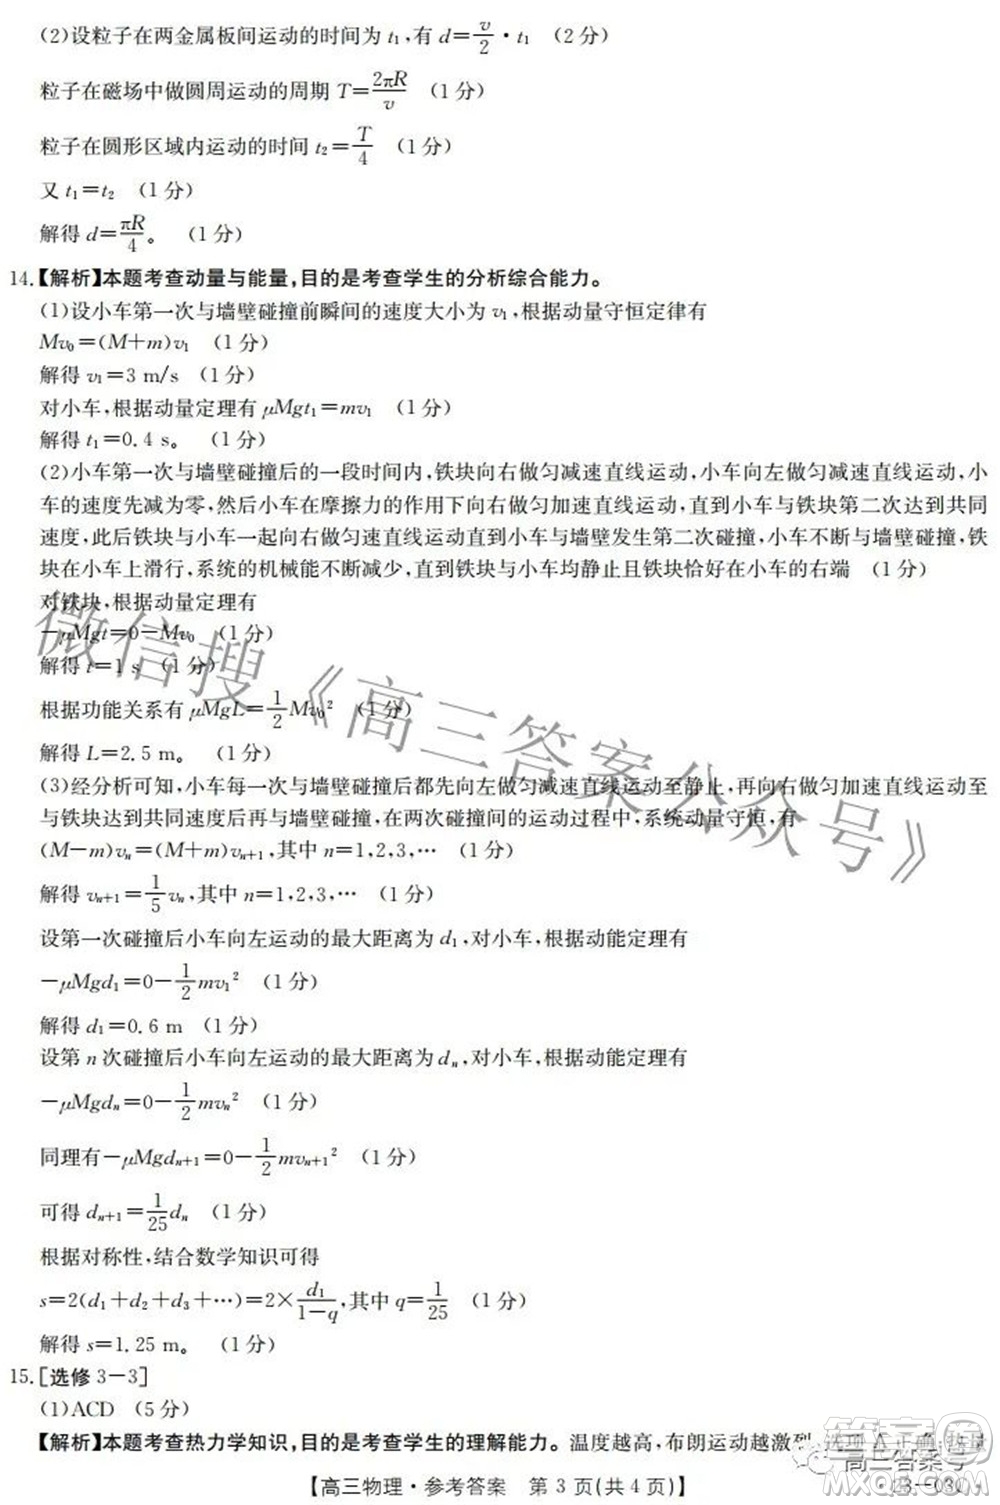 2022-2023年度河南省高三年级入学摸底考试一物理试题及答案